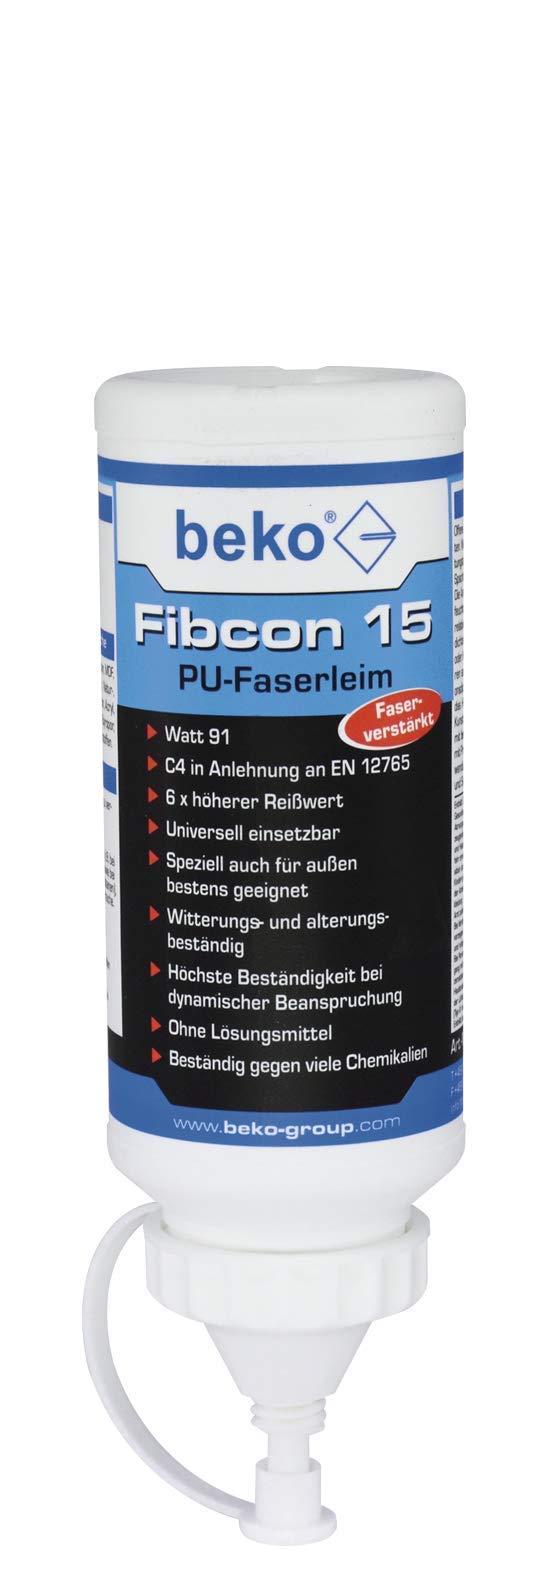  [AUSTRALIA] - beko Fibcon 15 PU fiber glue 500g 260 100 501